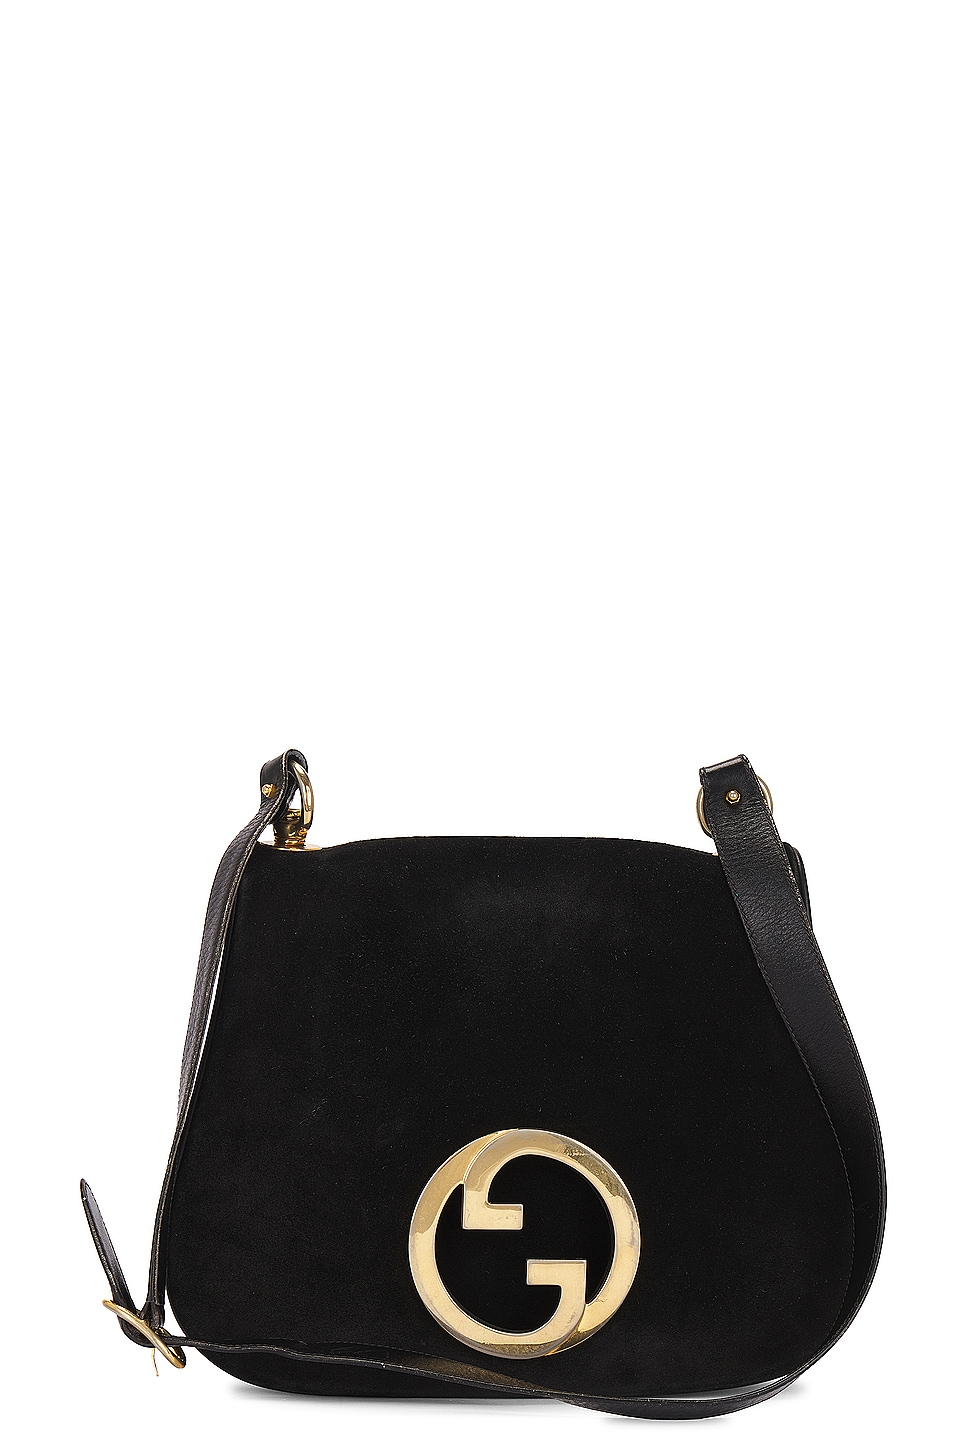 Gucci Leather Interlocking G Shoulder Bag in Black